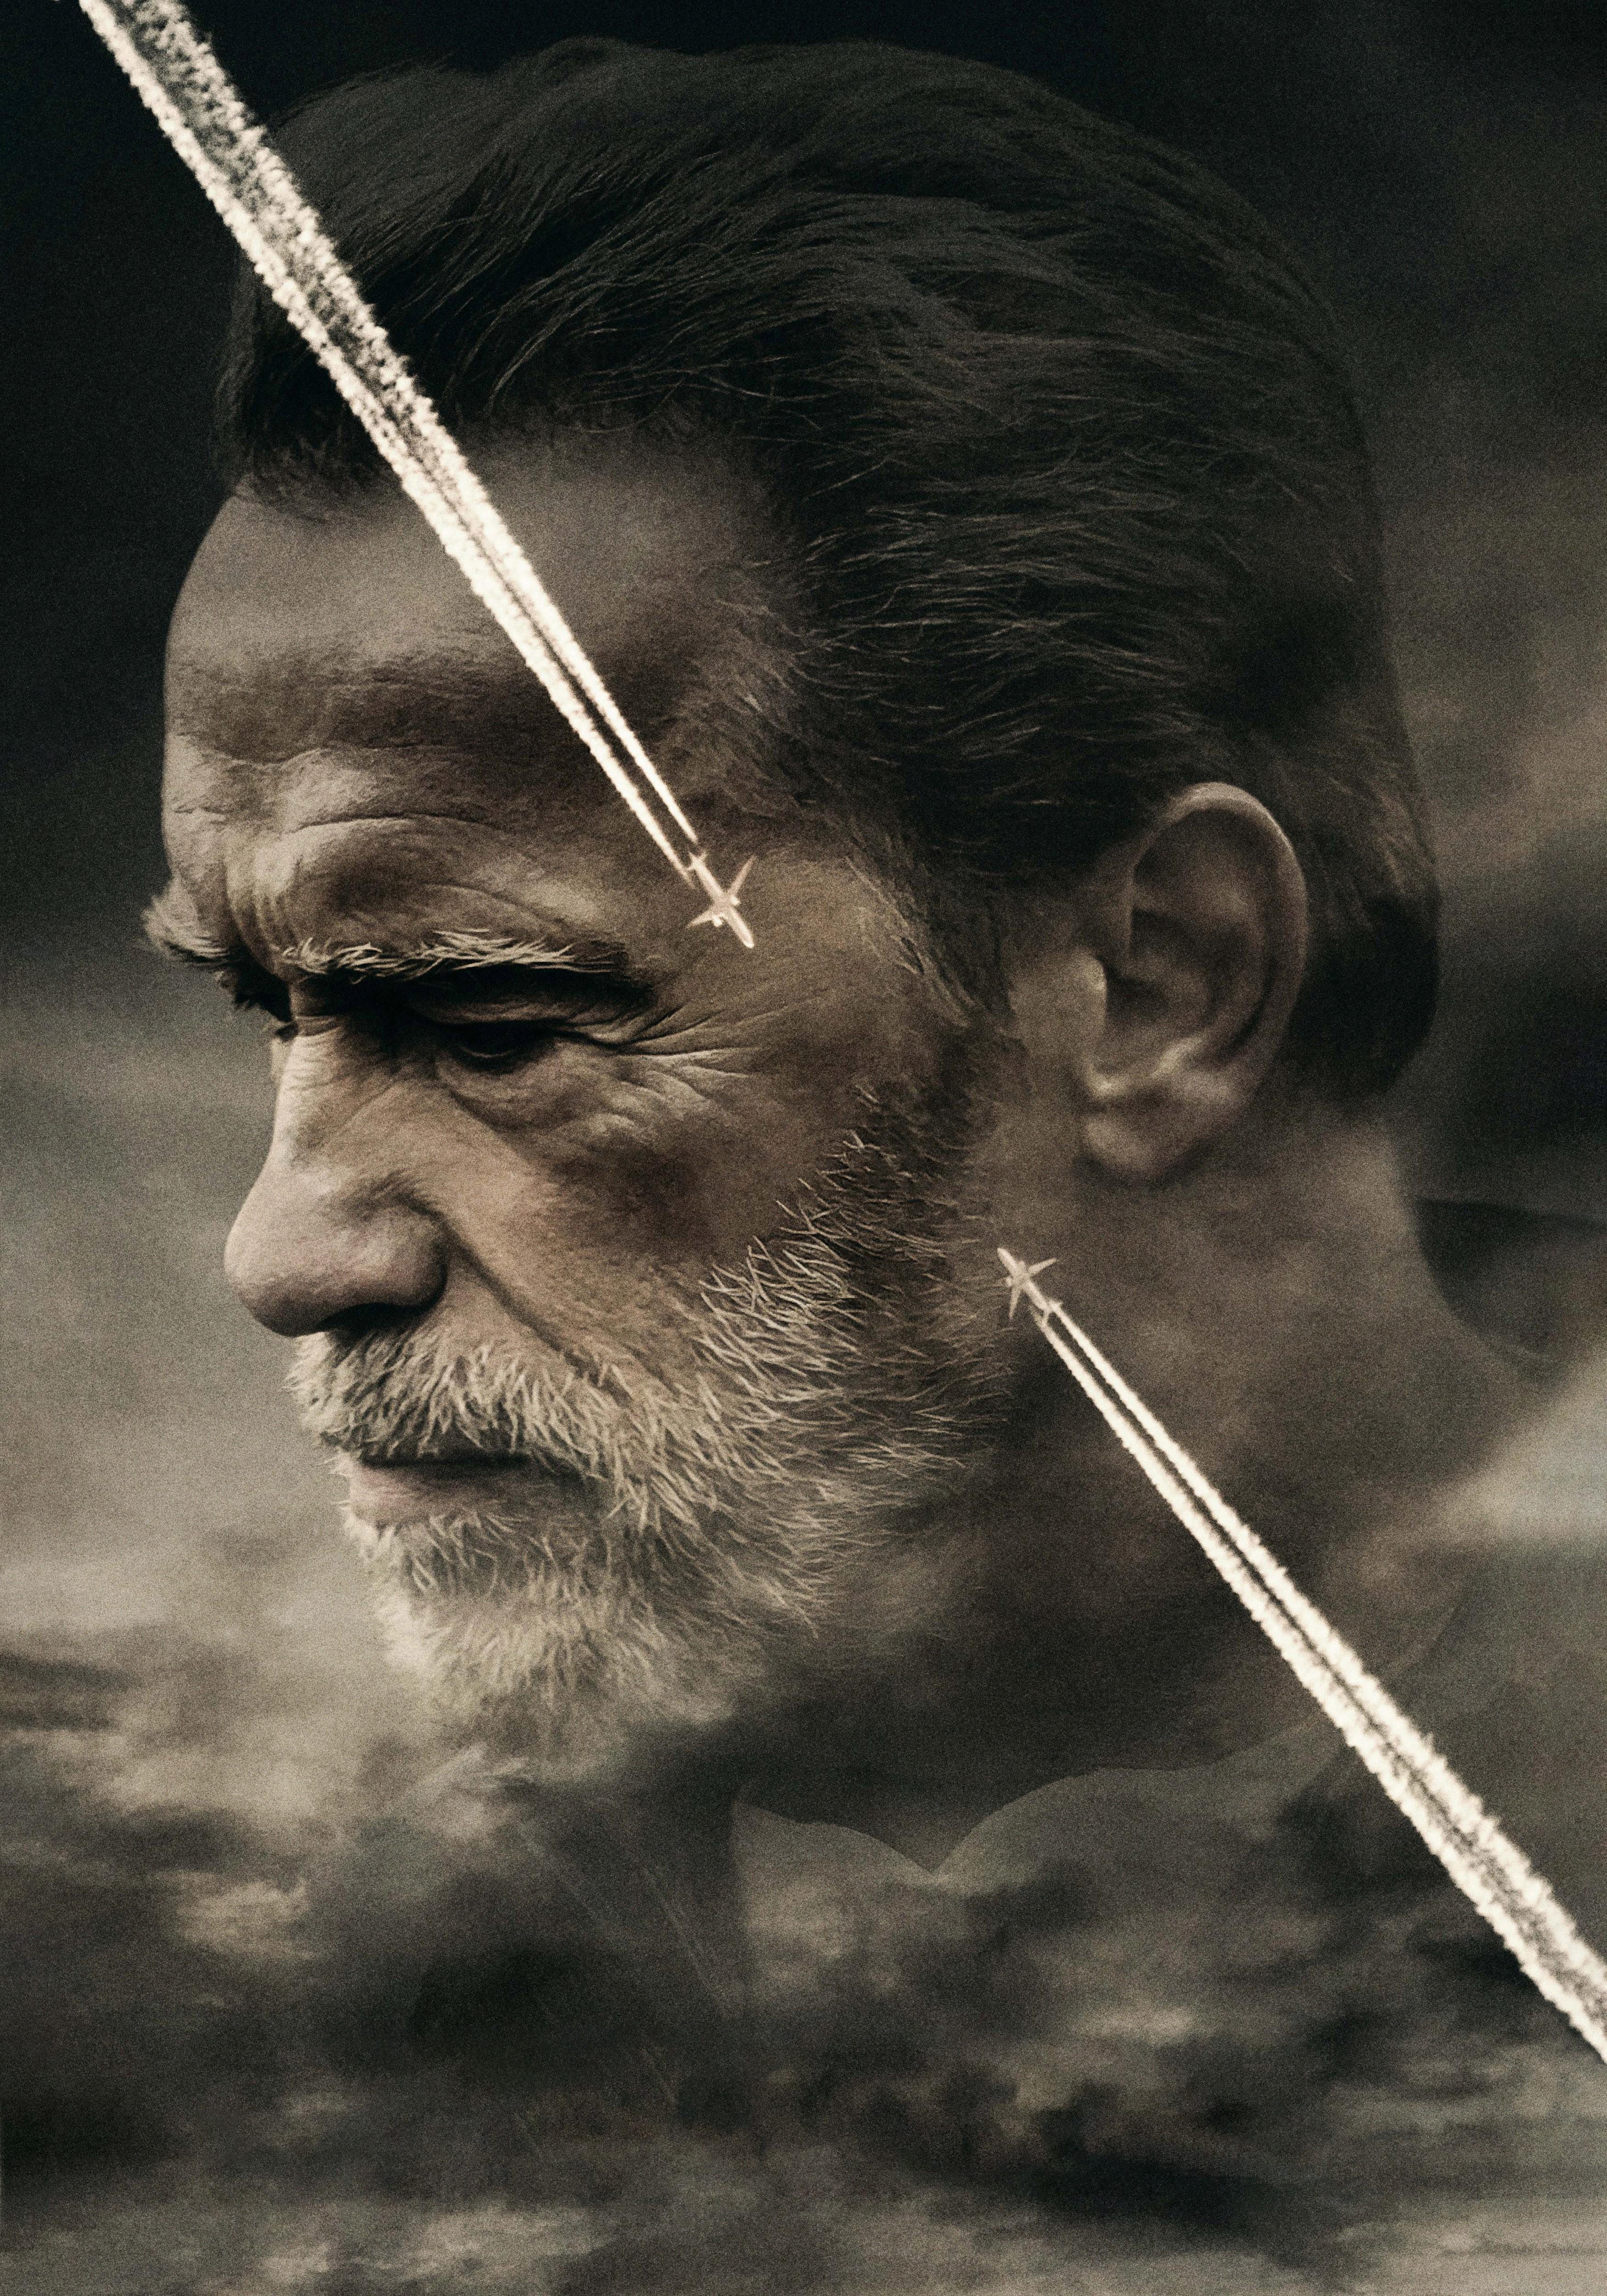 HD wallpaper, Men, Arnold Schwarzenegger, Aftermath 2017, Head, Beard